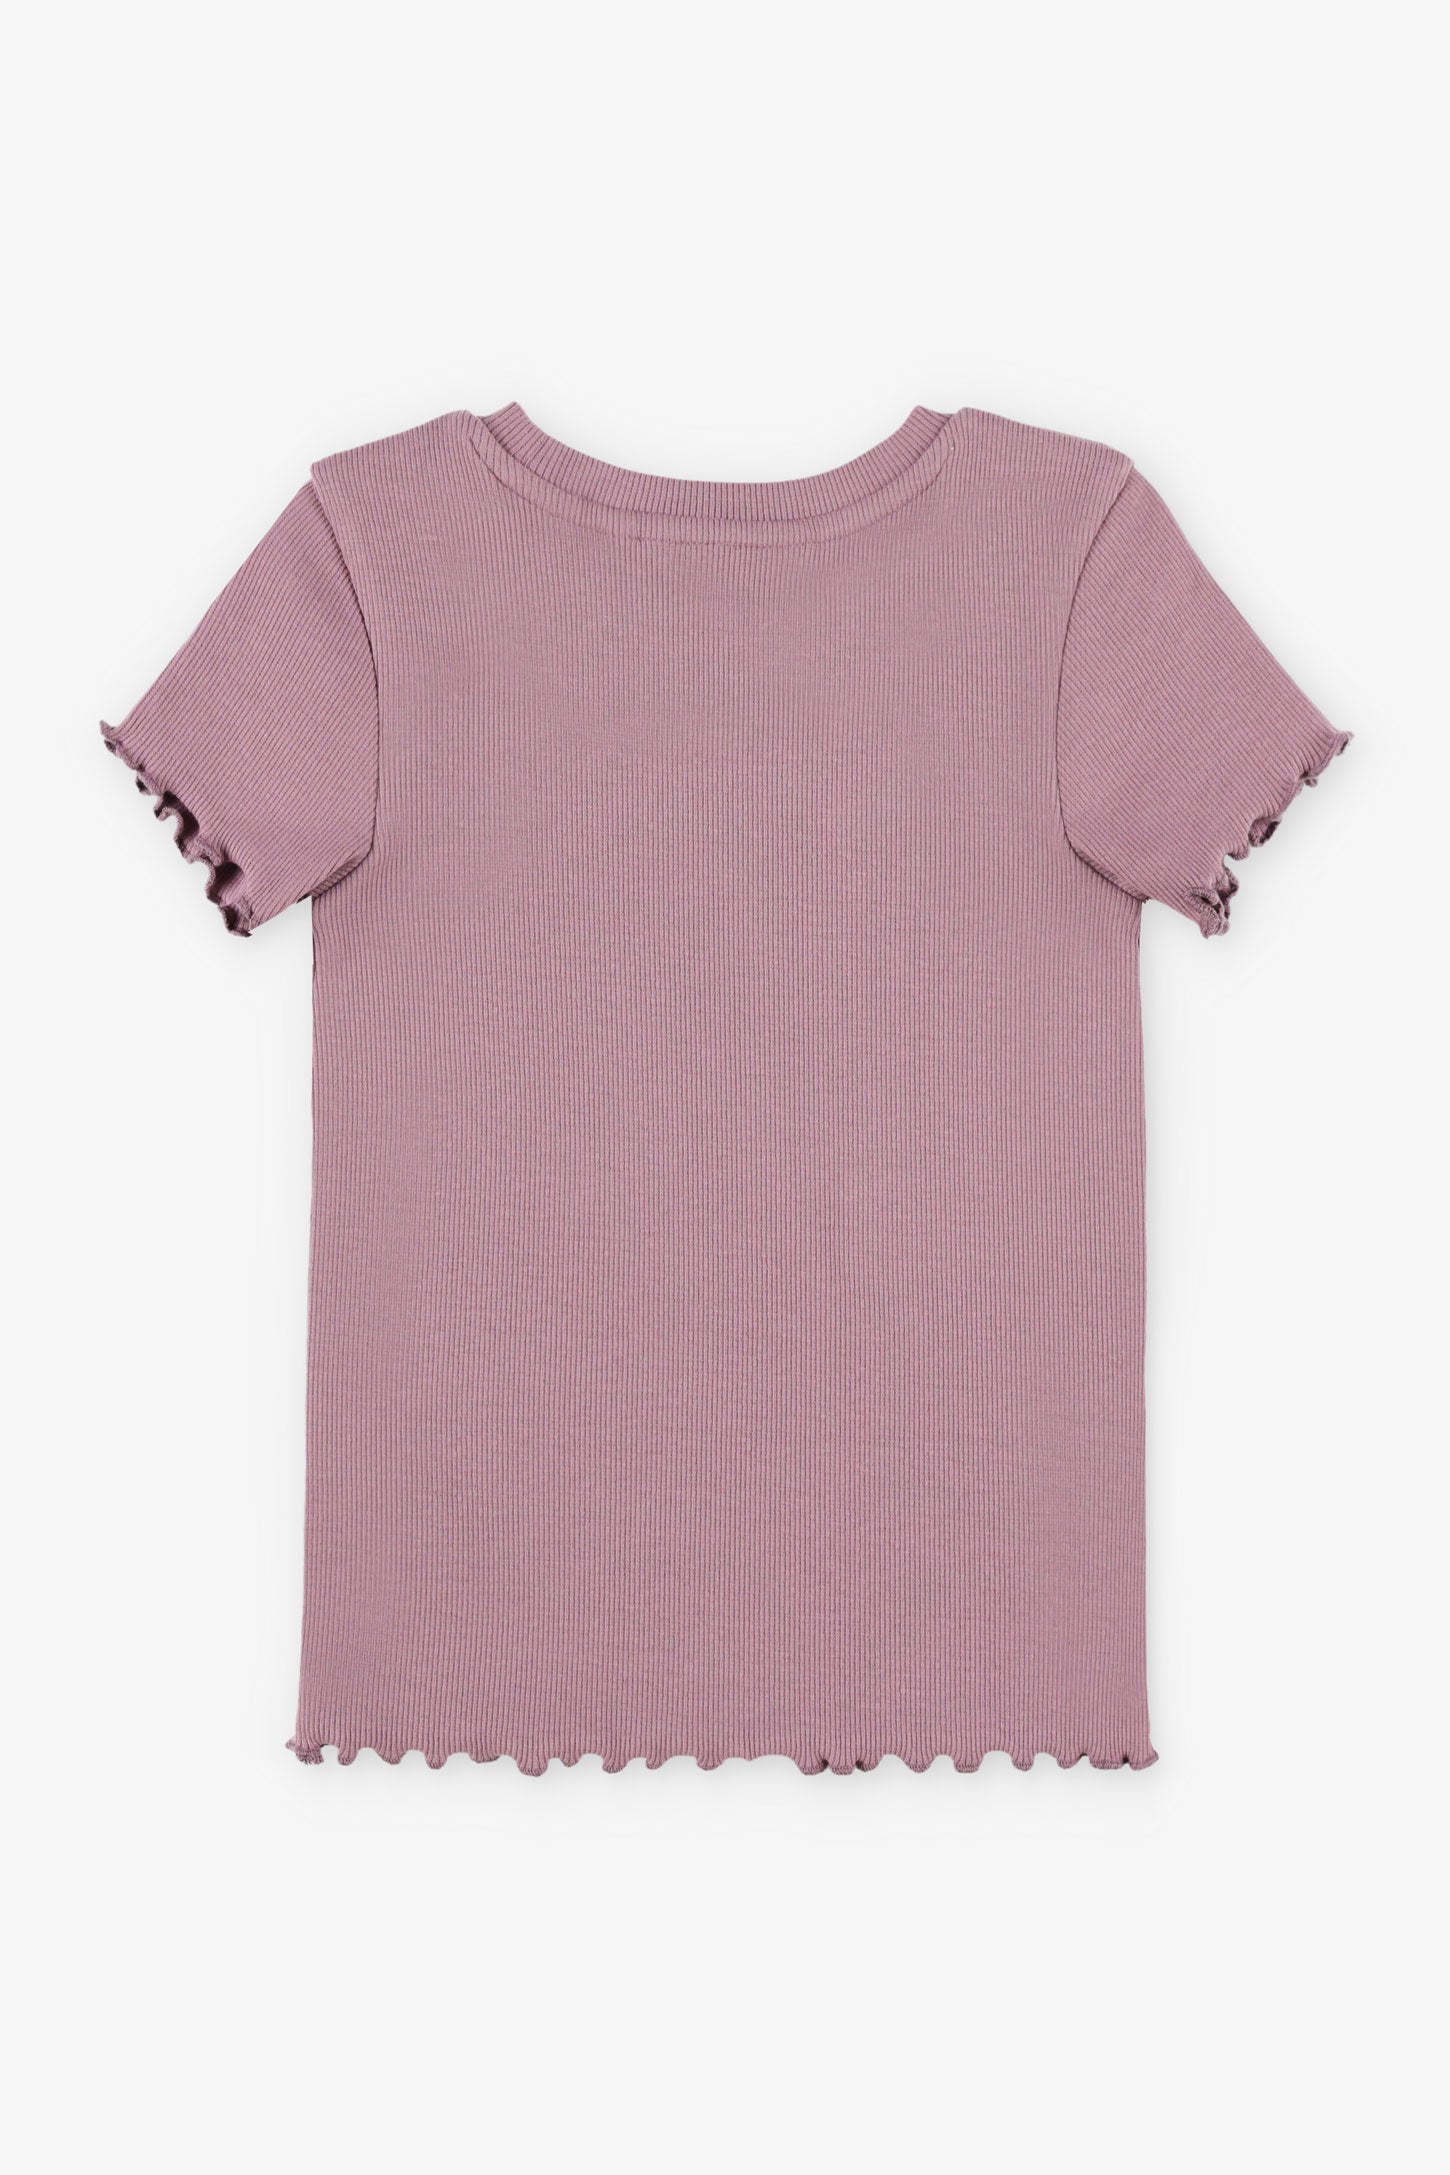 T-shirt côtelé finitions laitue - Enfant fille && MAUVE